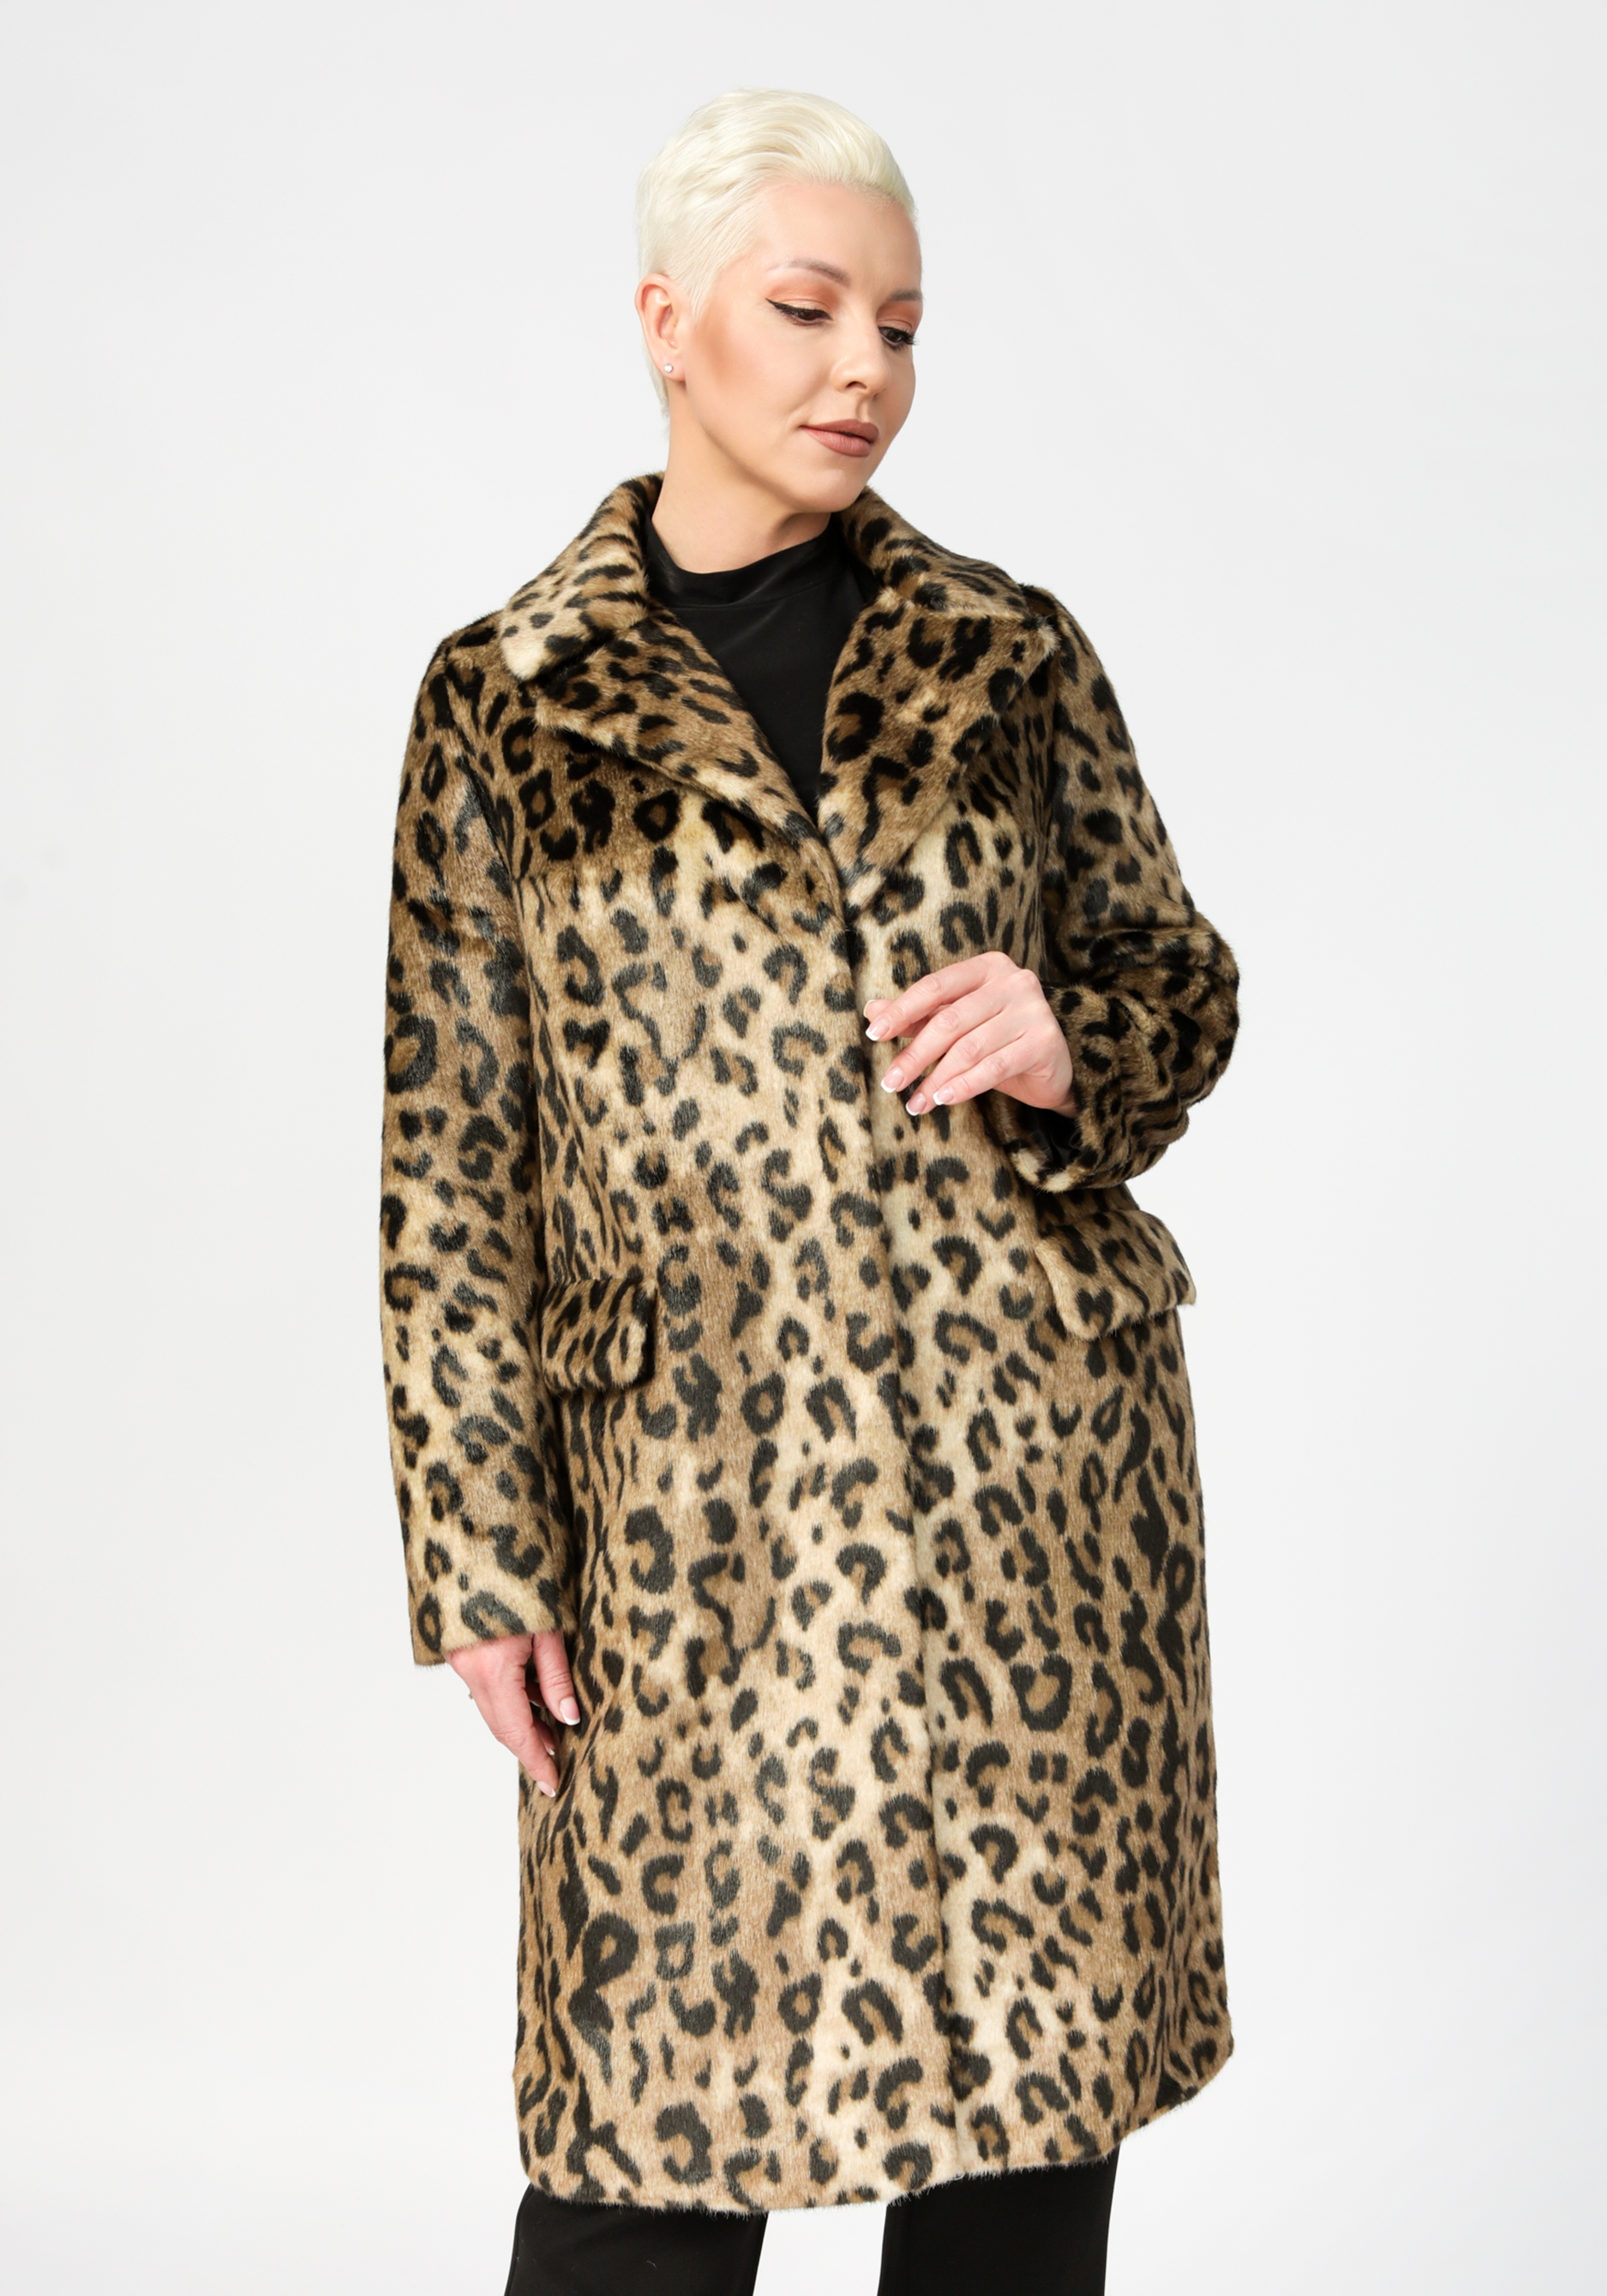 Пальто с леопардовым принтом Simakhov, размер 54, цвет коричневый